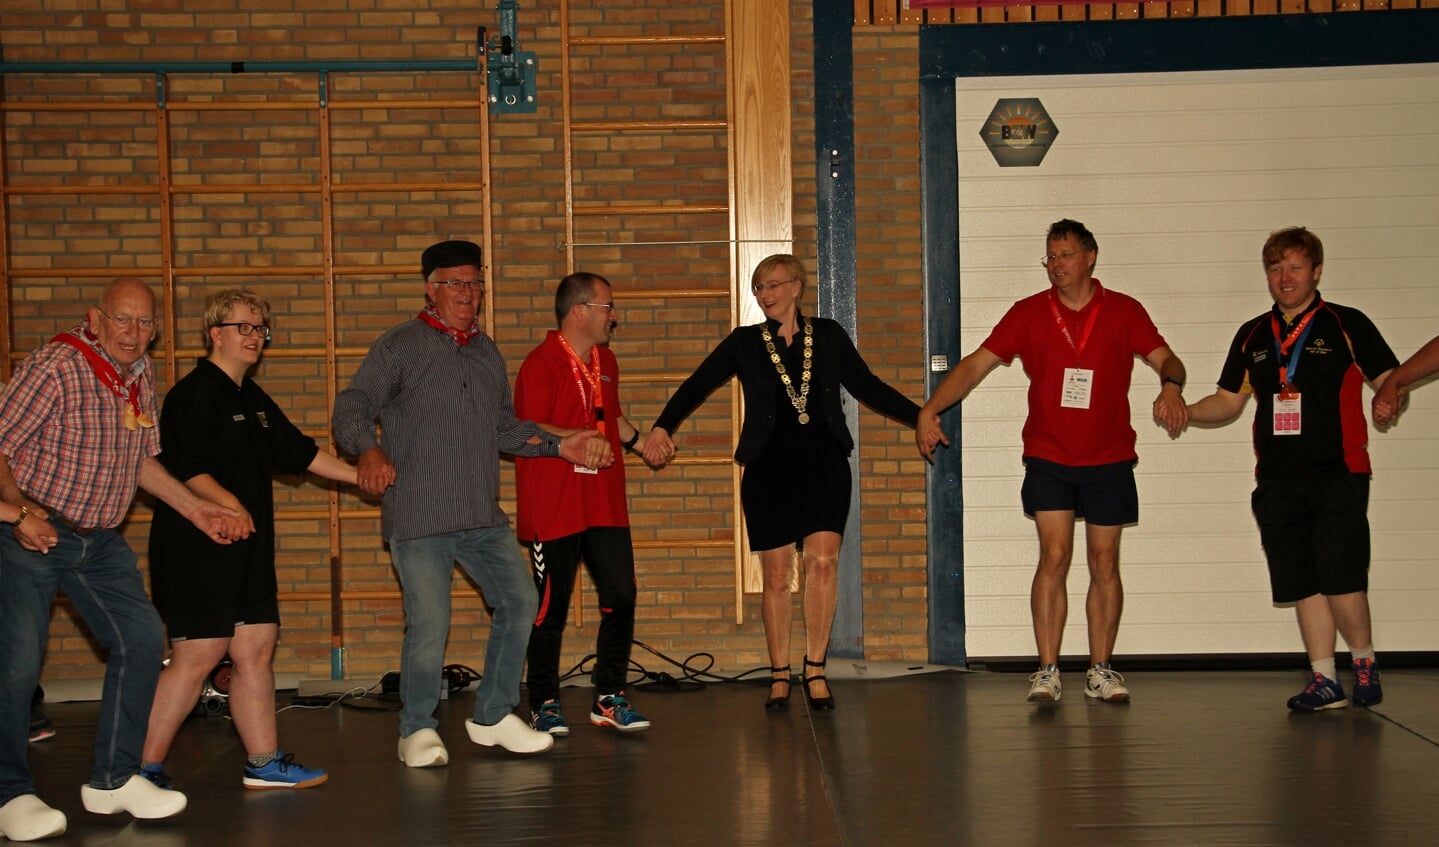 Burgemeester Besselink doet sportief mee met de warming-up. Foto: Liesbeth Spaansen